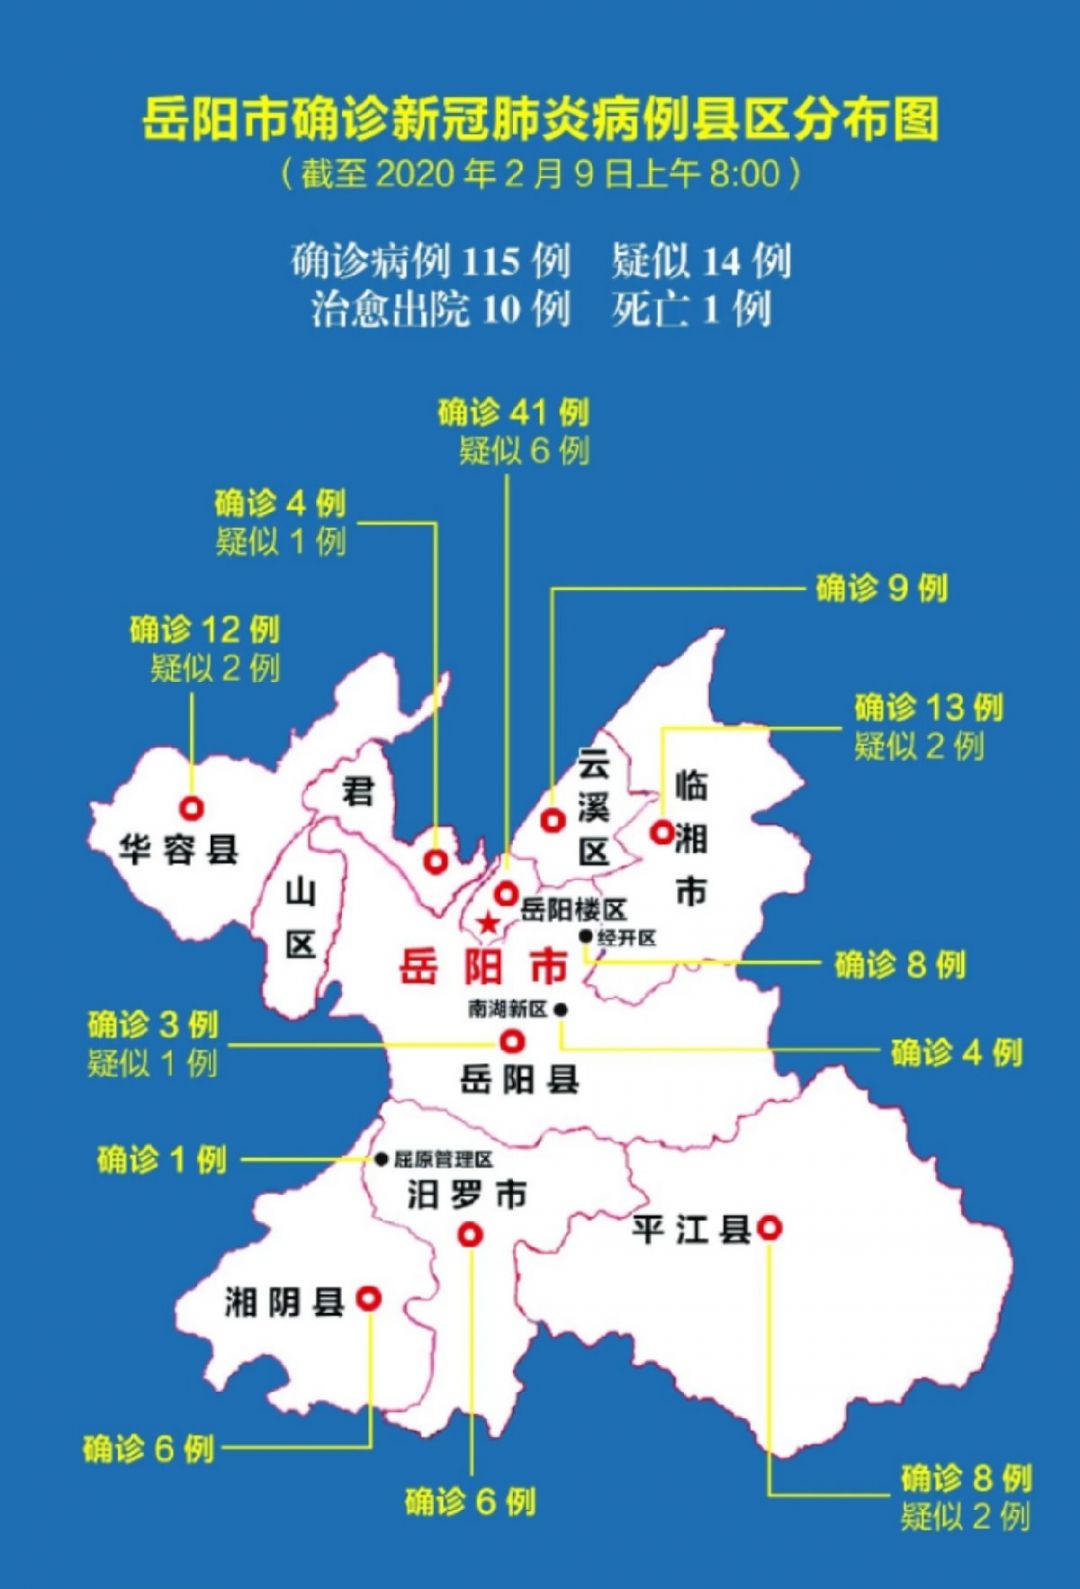 岳阳新型肺炎确诊115人县区分布图2月9日更新